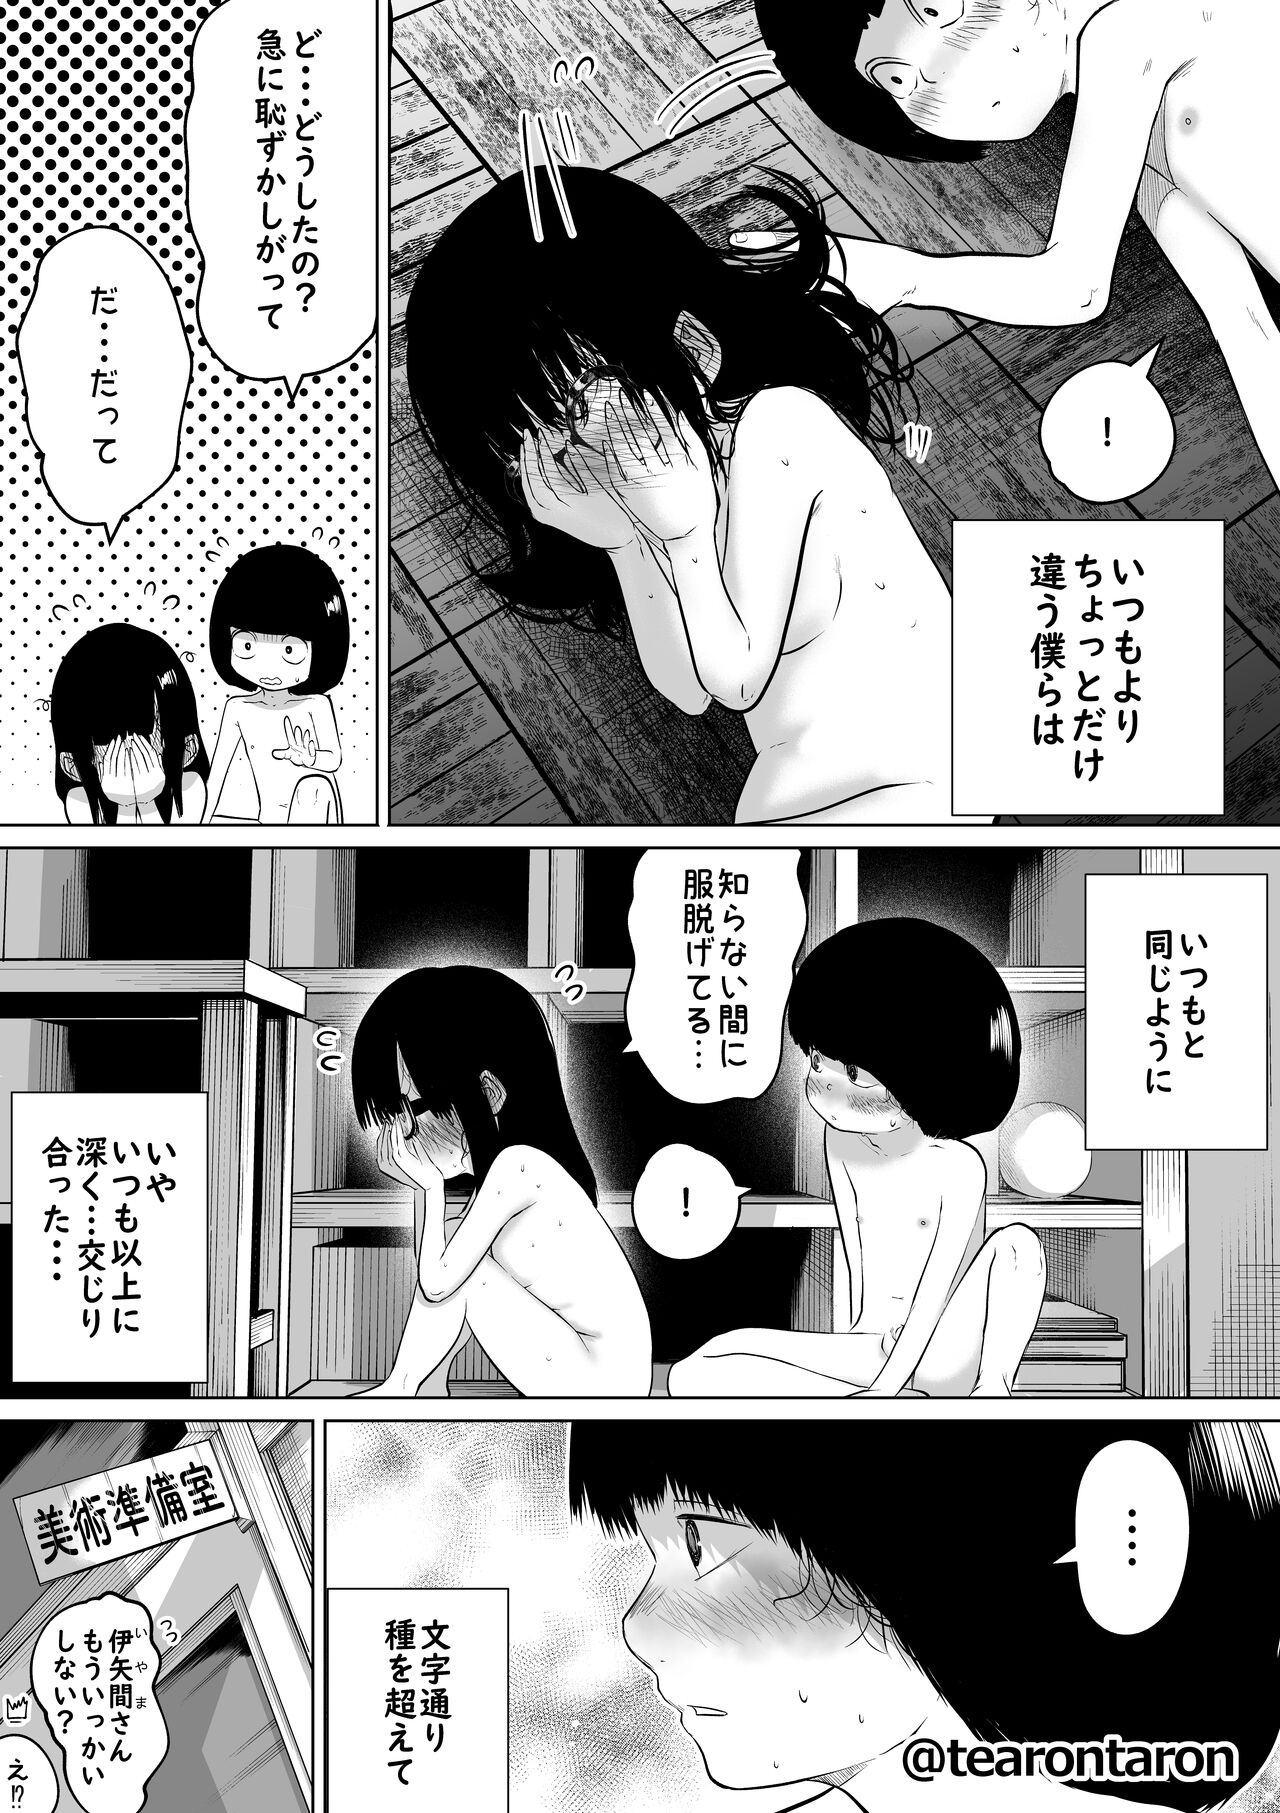 [Tearontaron] Gakkou de Ichiban Jimi na Futari ga Tsukiatte kara no Hanashi 2 25